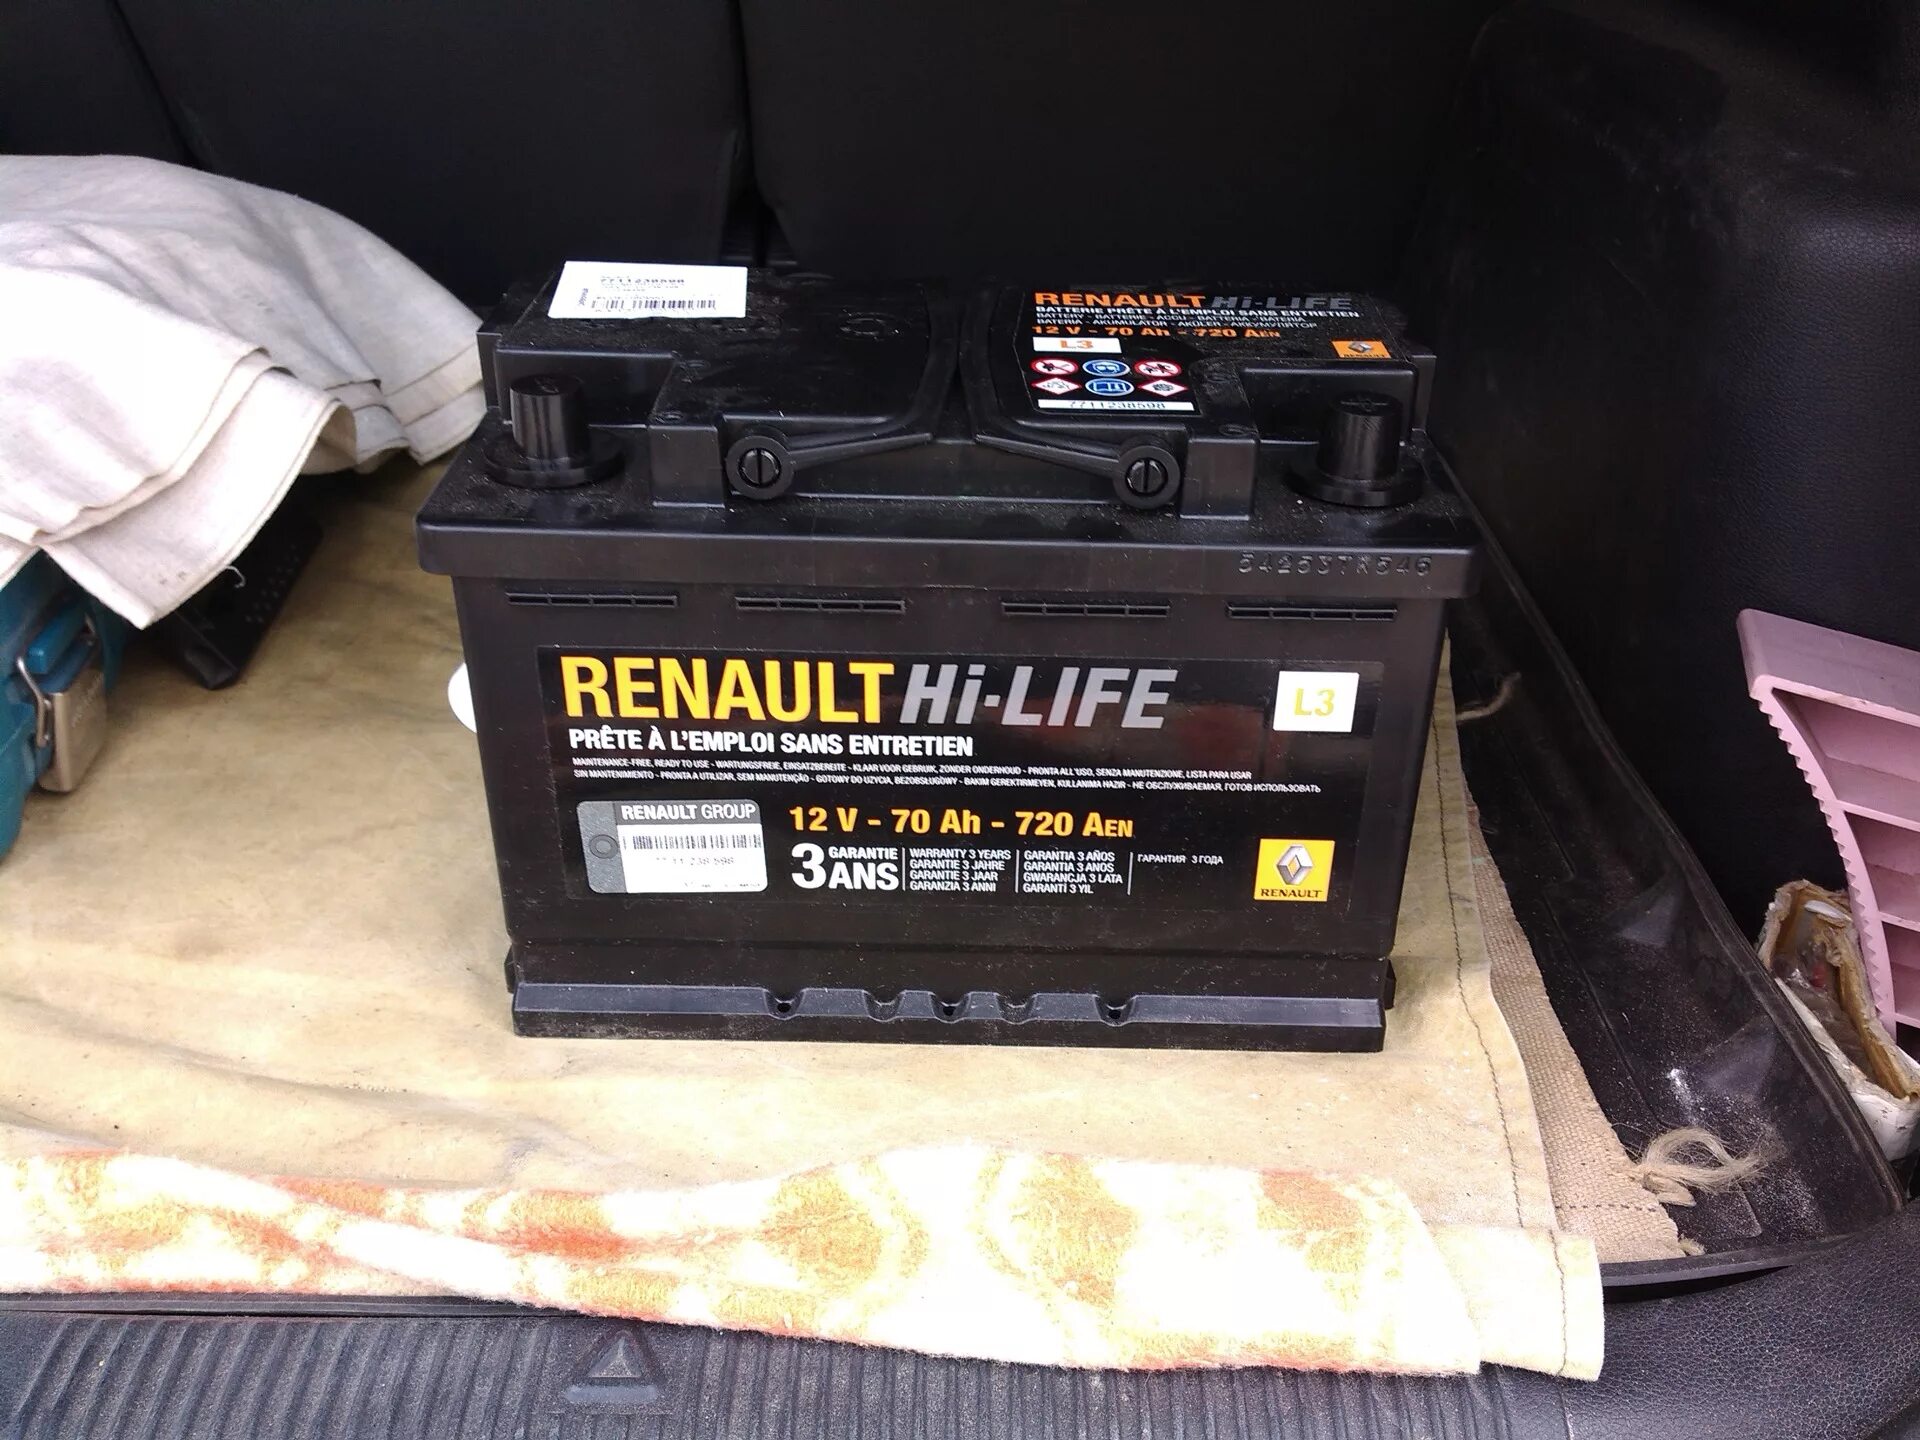 Аккумулятор рено оригинал. Аккумулятор Renault Hi-Life 12v. Аккумулятор Renault Hi-Life 12v 70ah. Аккумулятор Логан 70 ампер. Аккумулятор Рено Логан оригинал.